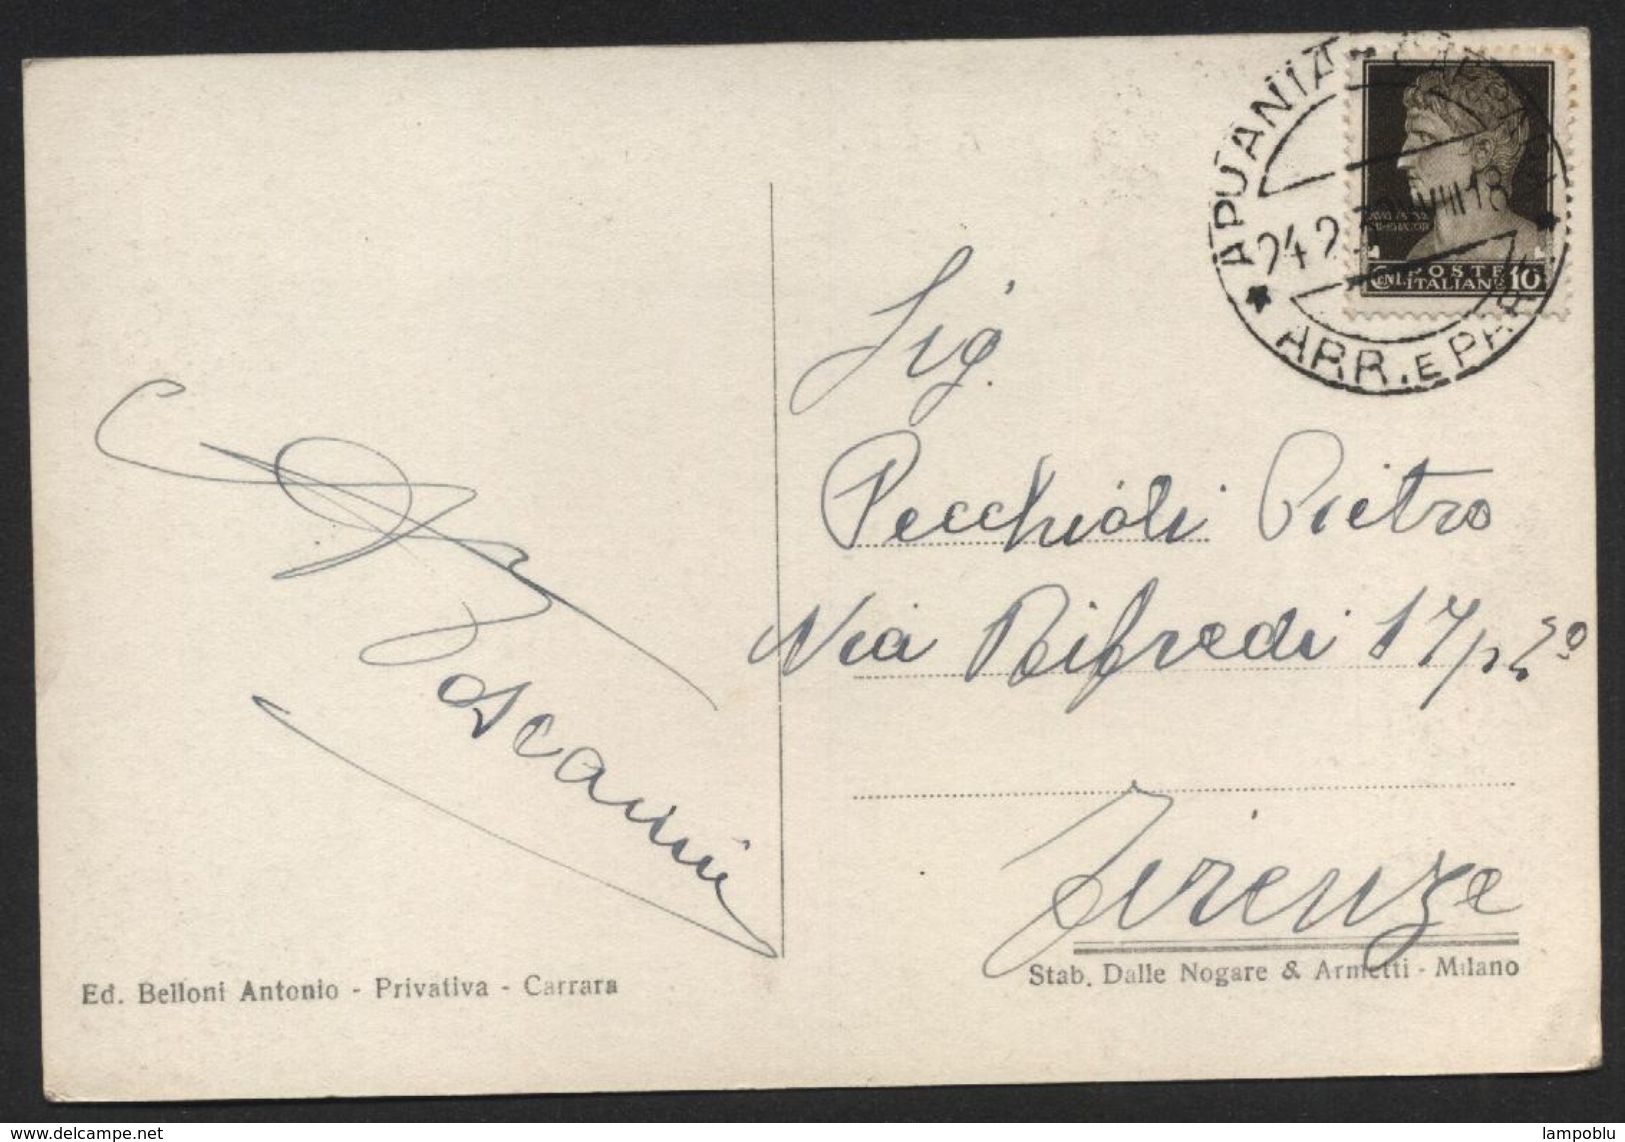 Apuania Carrara - Giardini Pubblici - Viaggiata Per Firenze Il 24.2.1939 - Autografo Aldo Toscanini - Carrara